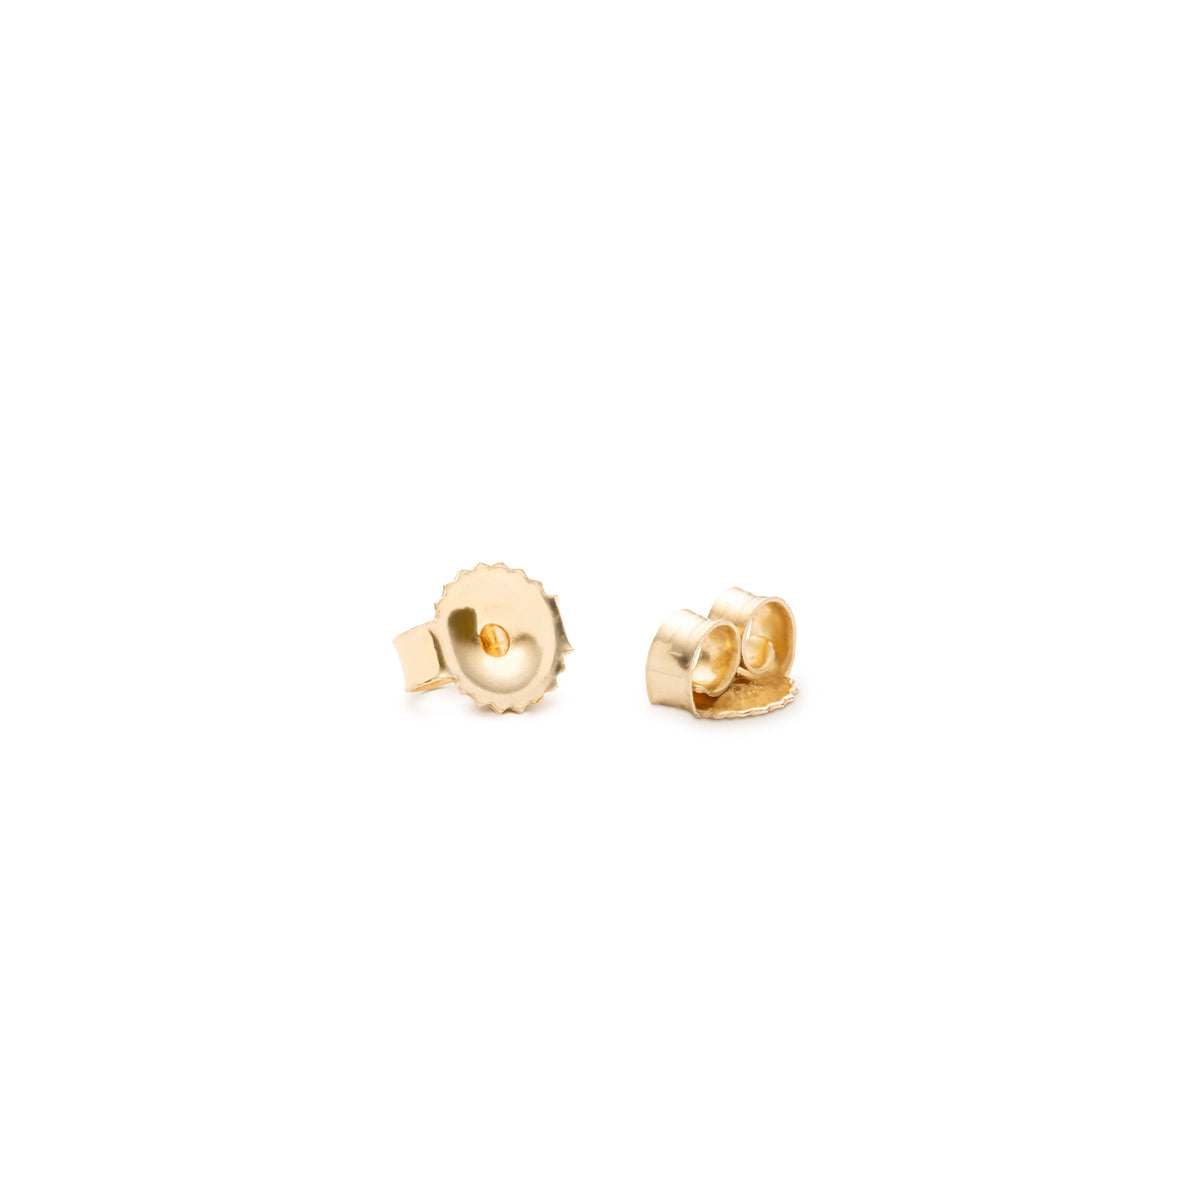 14K Gold Earring Backs - 14K Yellow Gold